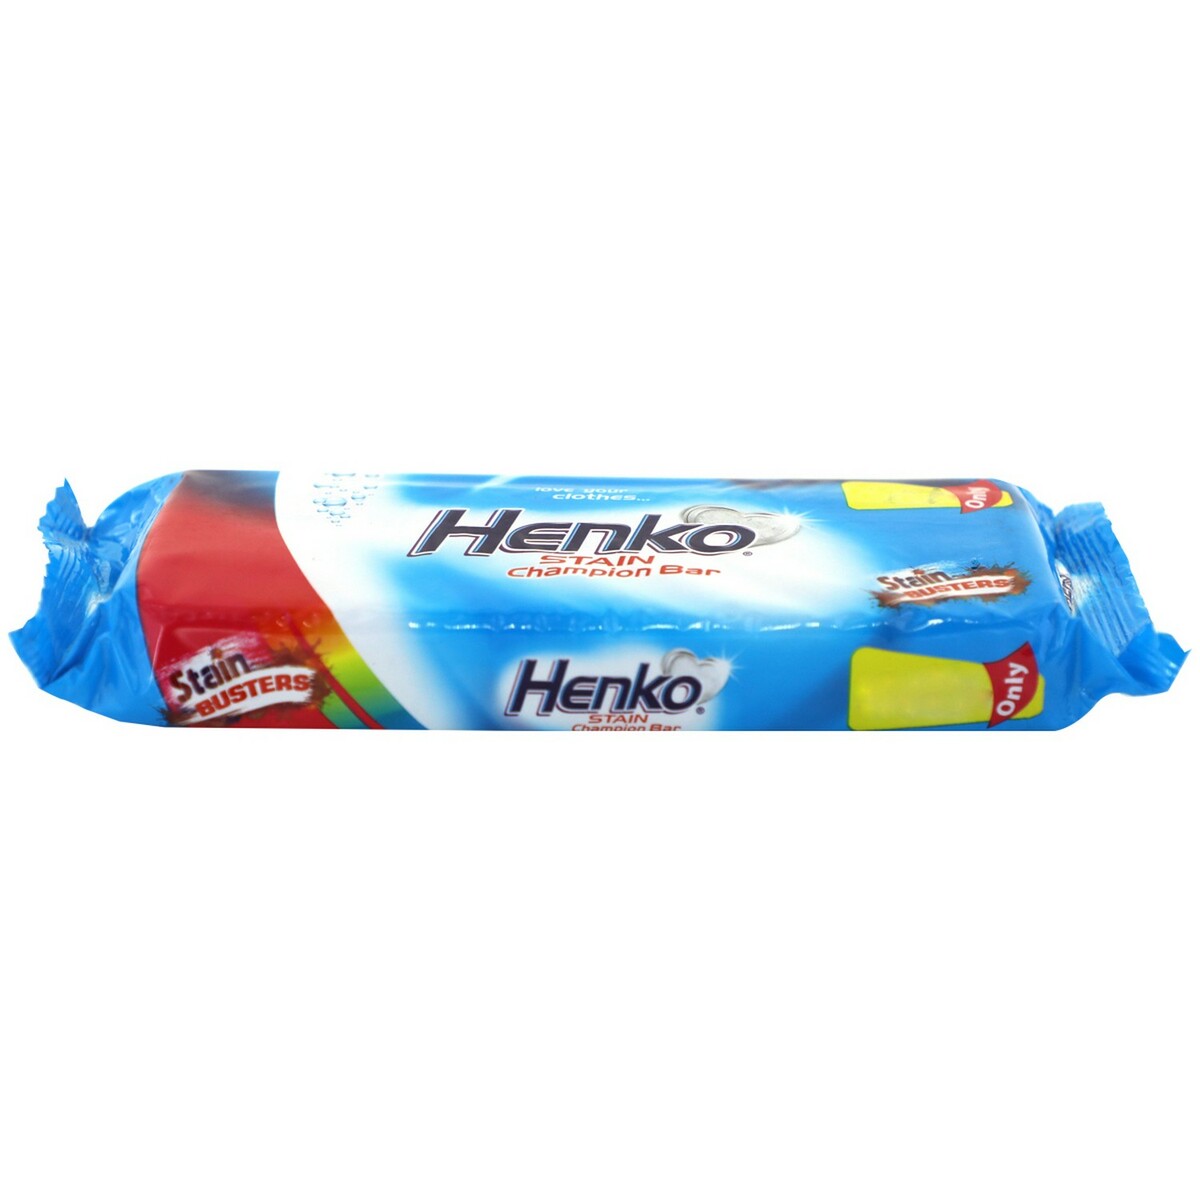 Henko Stain Champion Detergent Cake 400g